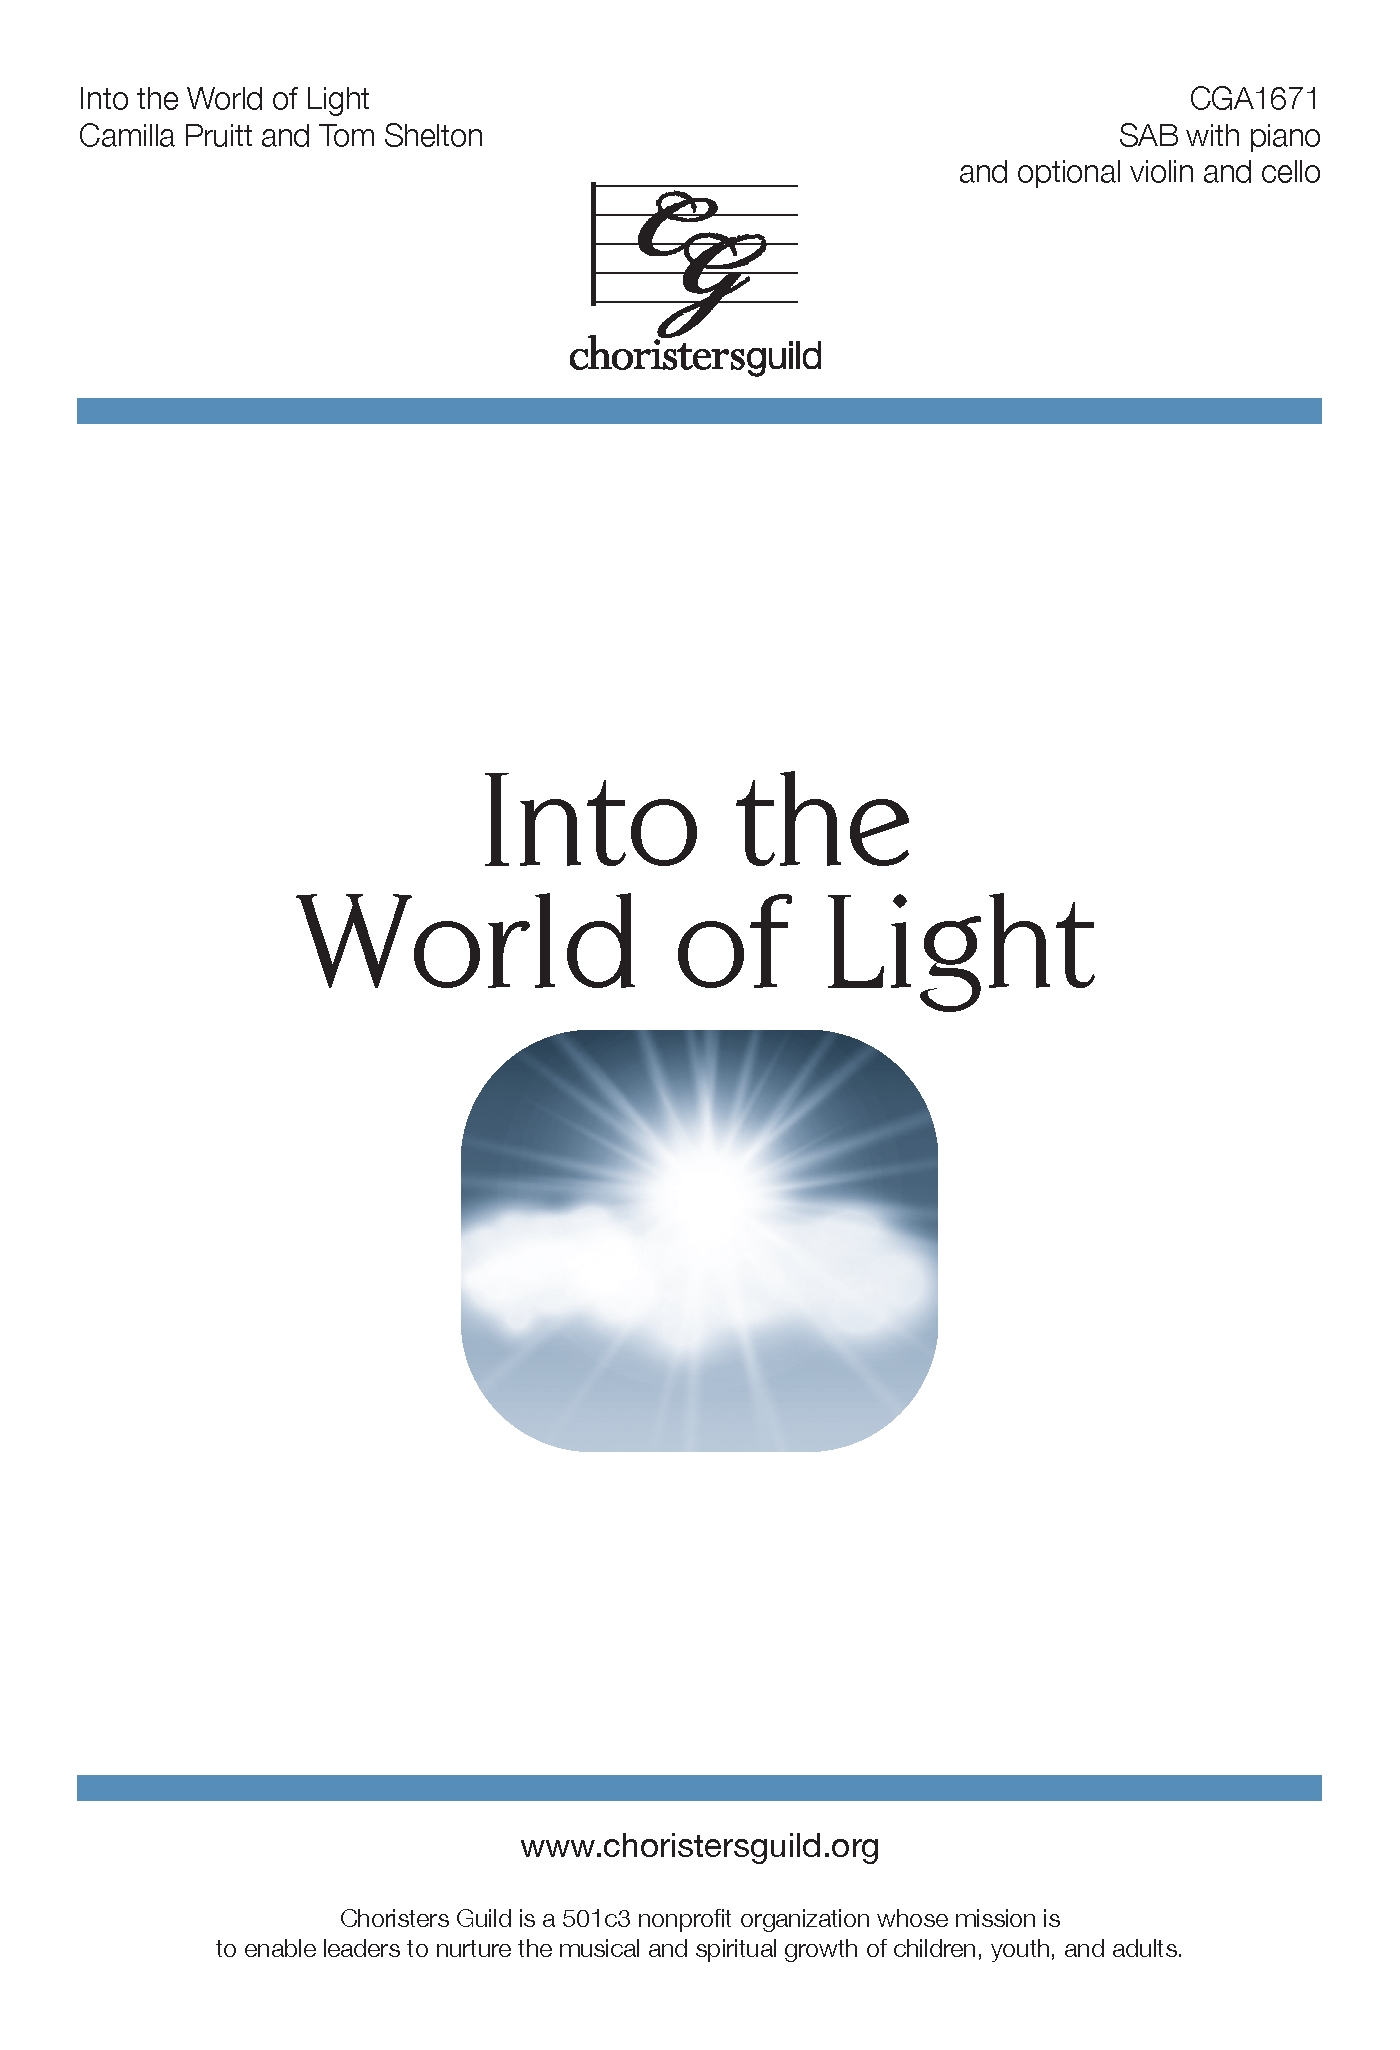 Into the World of Light - SAB